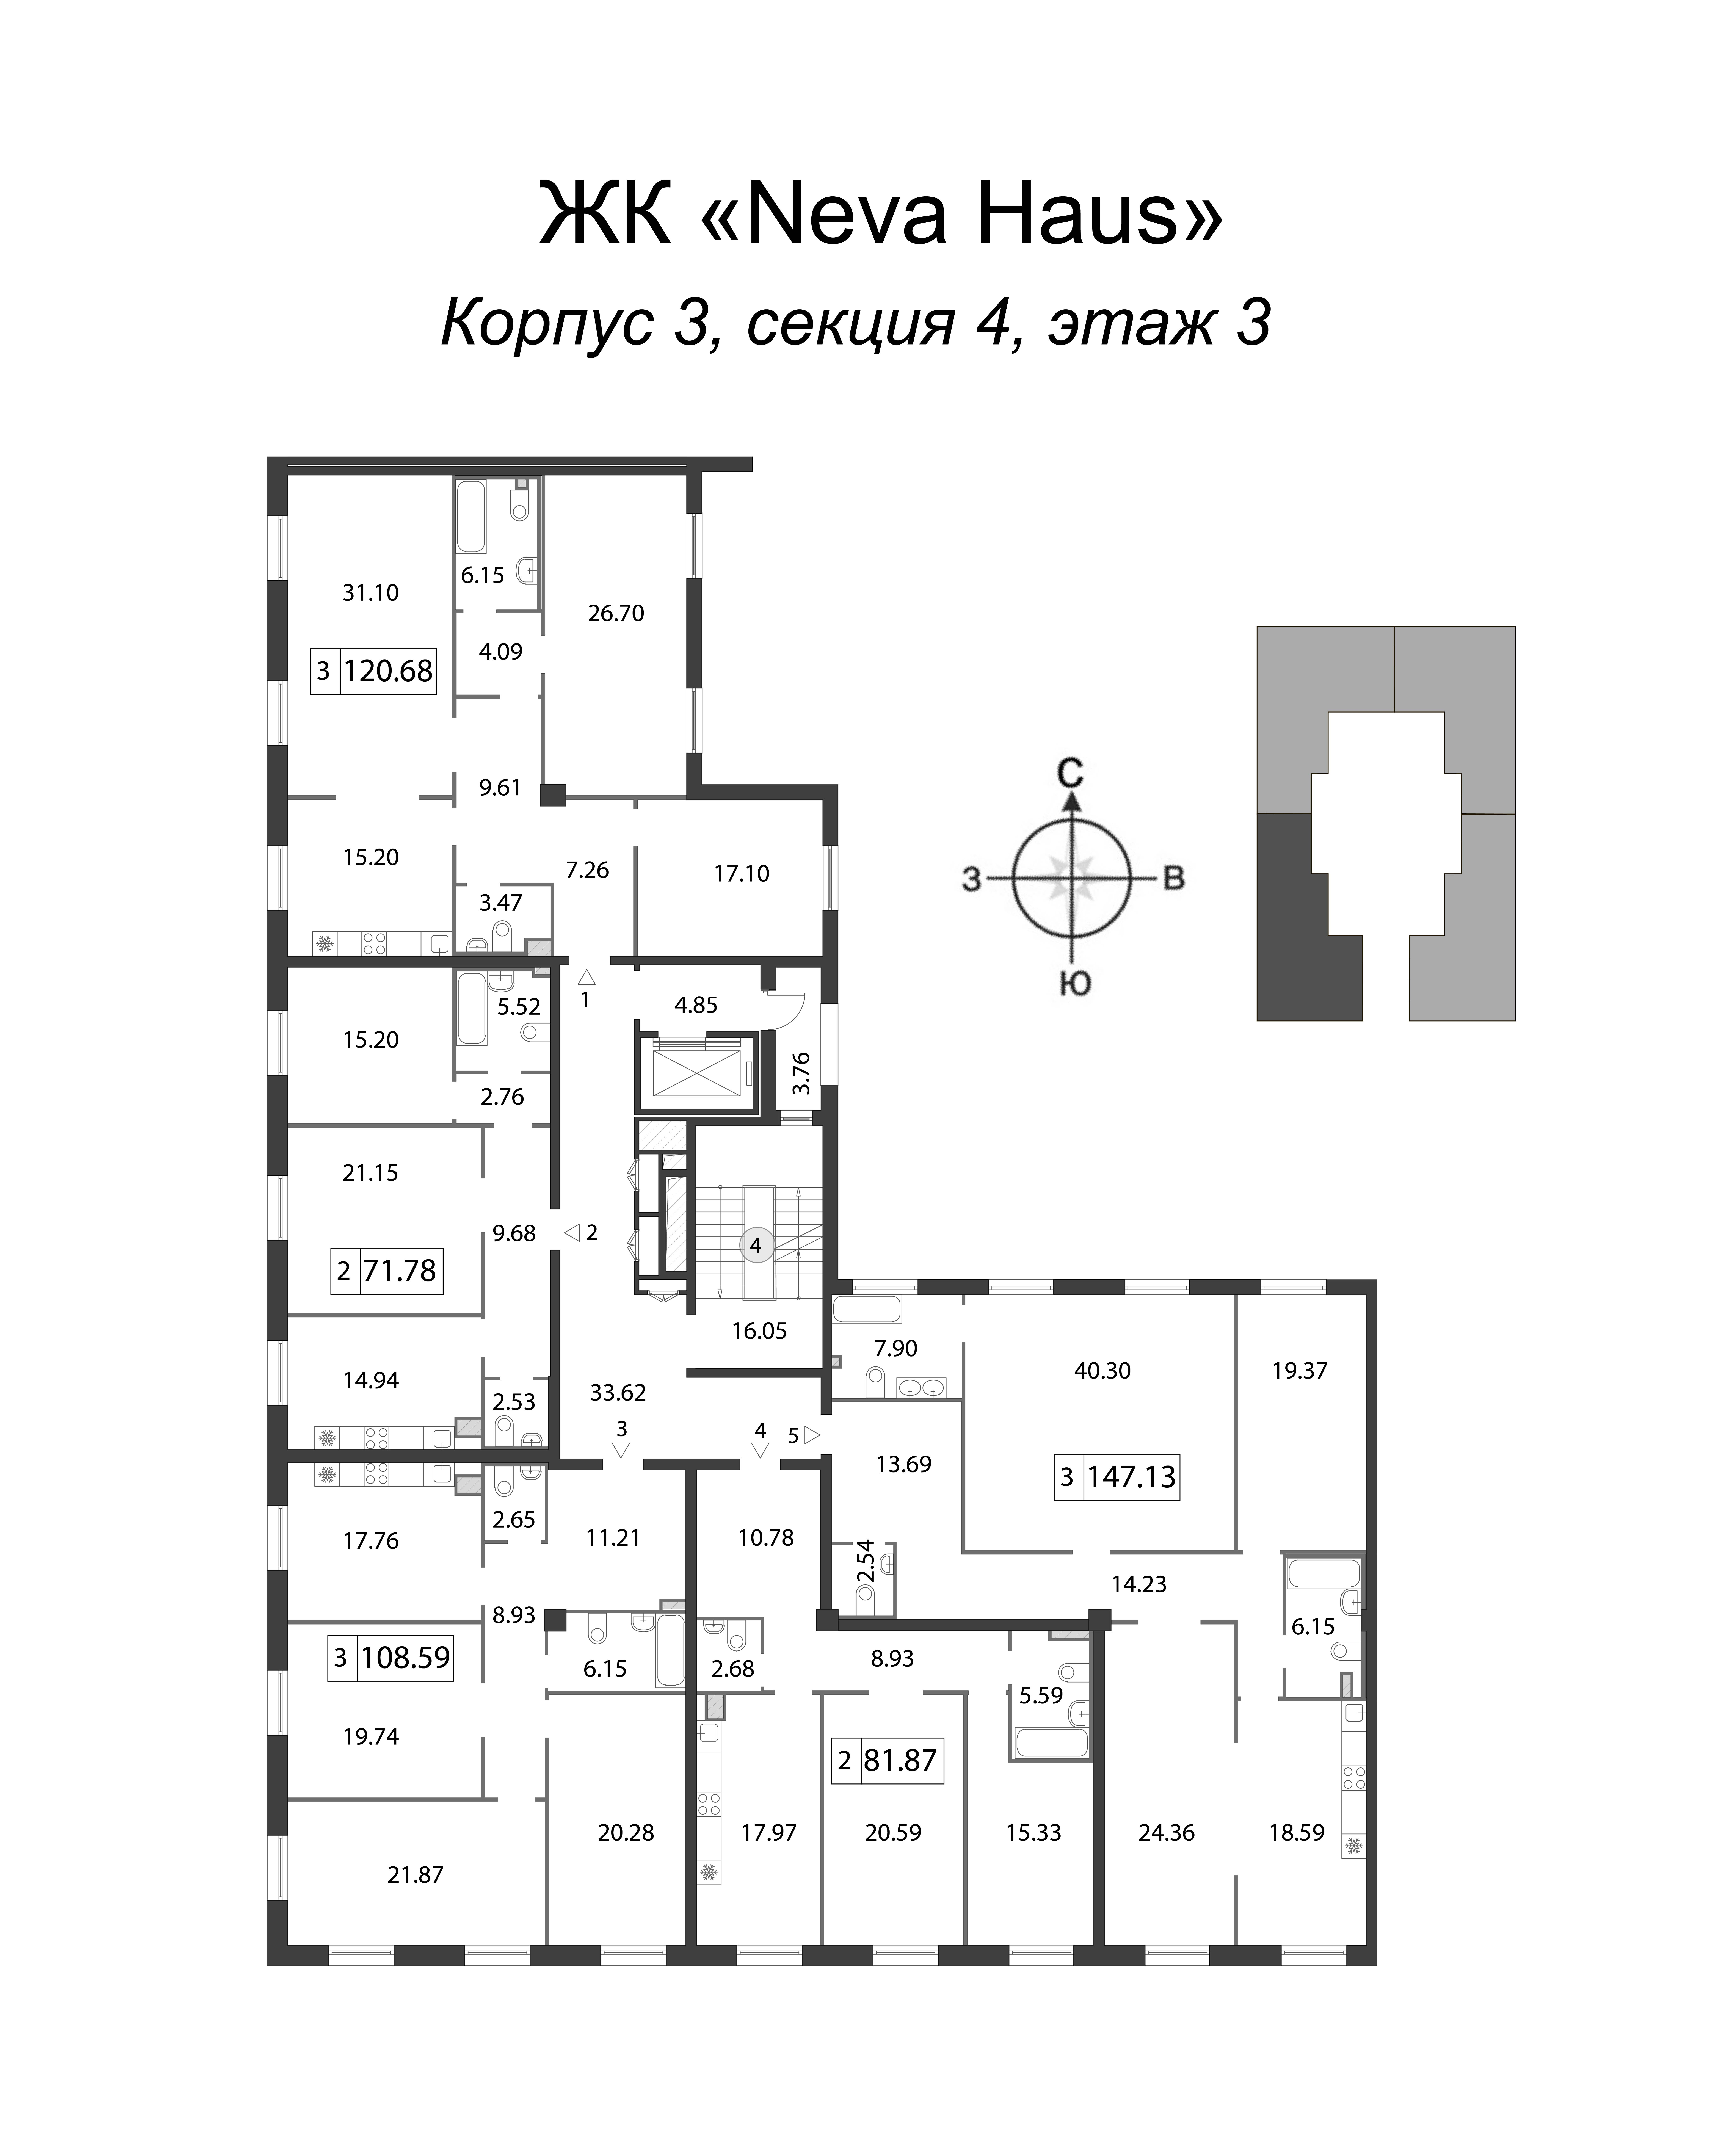 4-комнатная (Евро) квартира, 147.2 м² в ЖК "Neva Haus" - планировка этажа